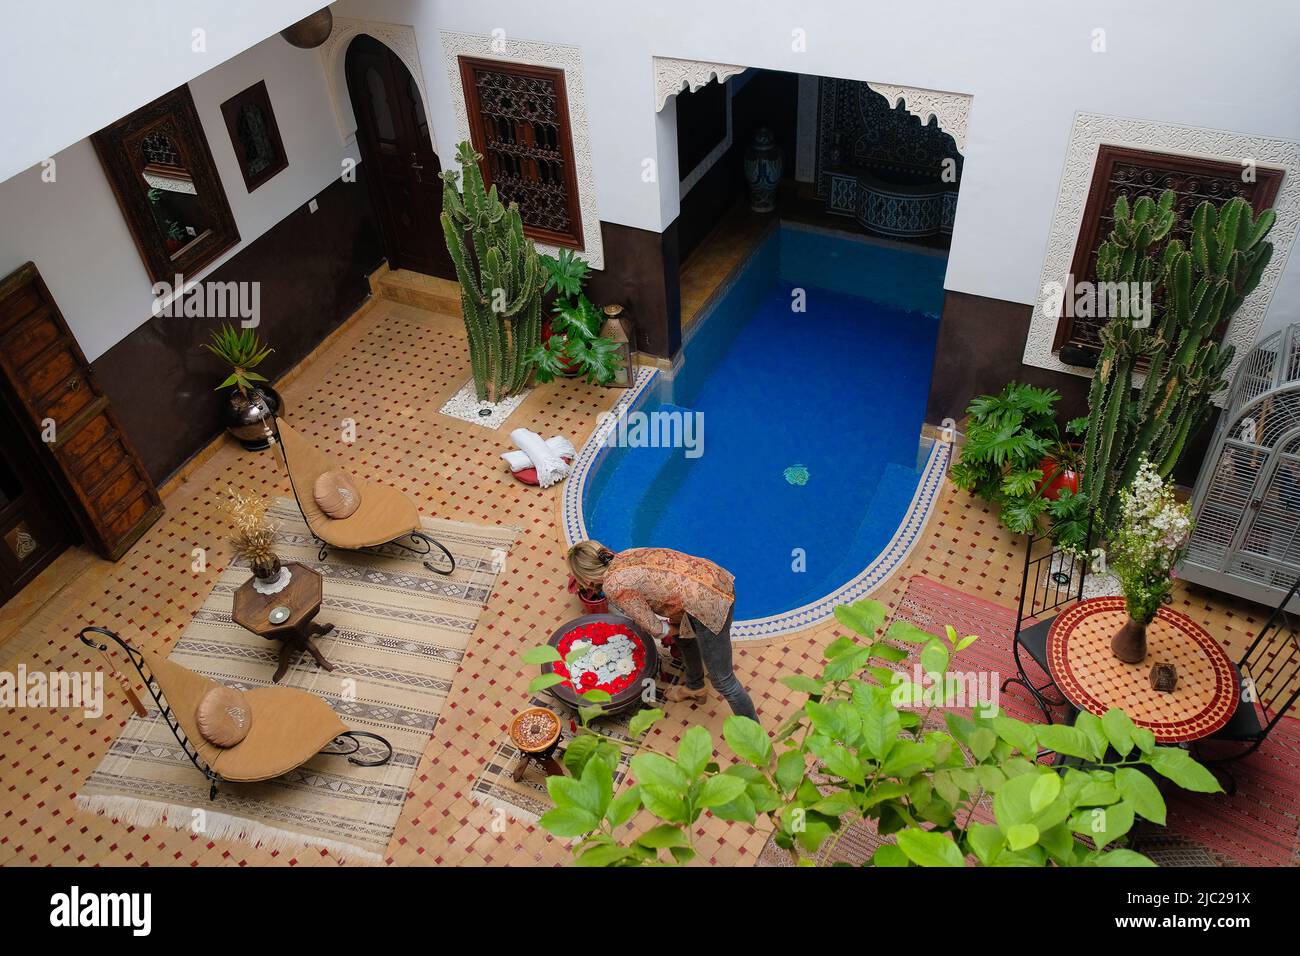 Marrakech, Maroc : vue de dessus d'une cour de jardin élégante avec une piscine à l'intérieur d'un riad traditionnel (manoir marocain) devenu un hôtel boutique exotique. Banque D'Images